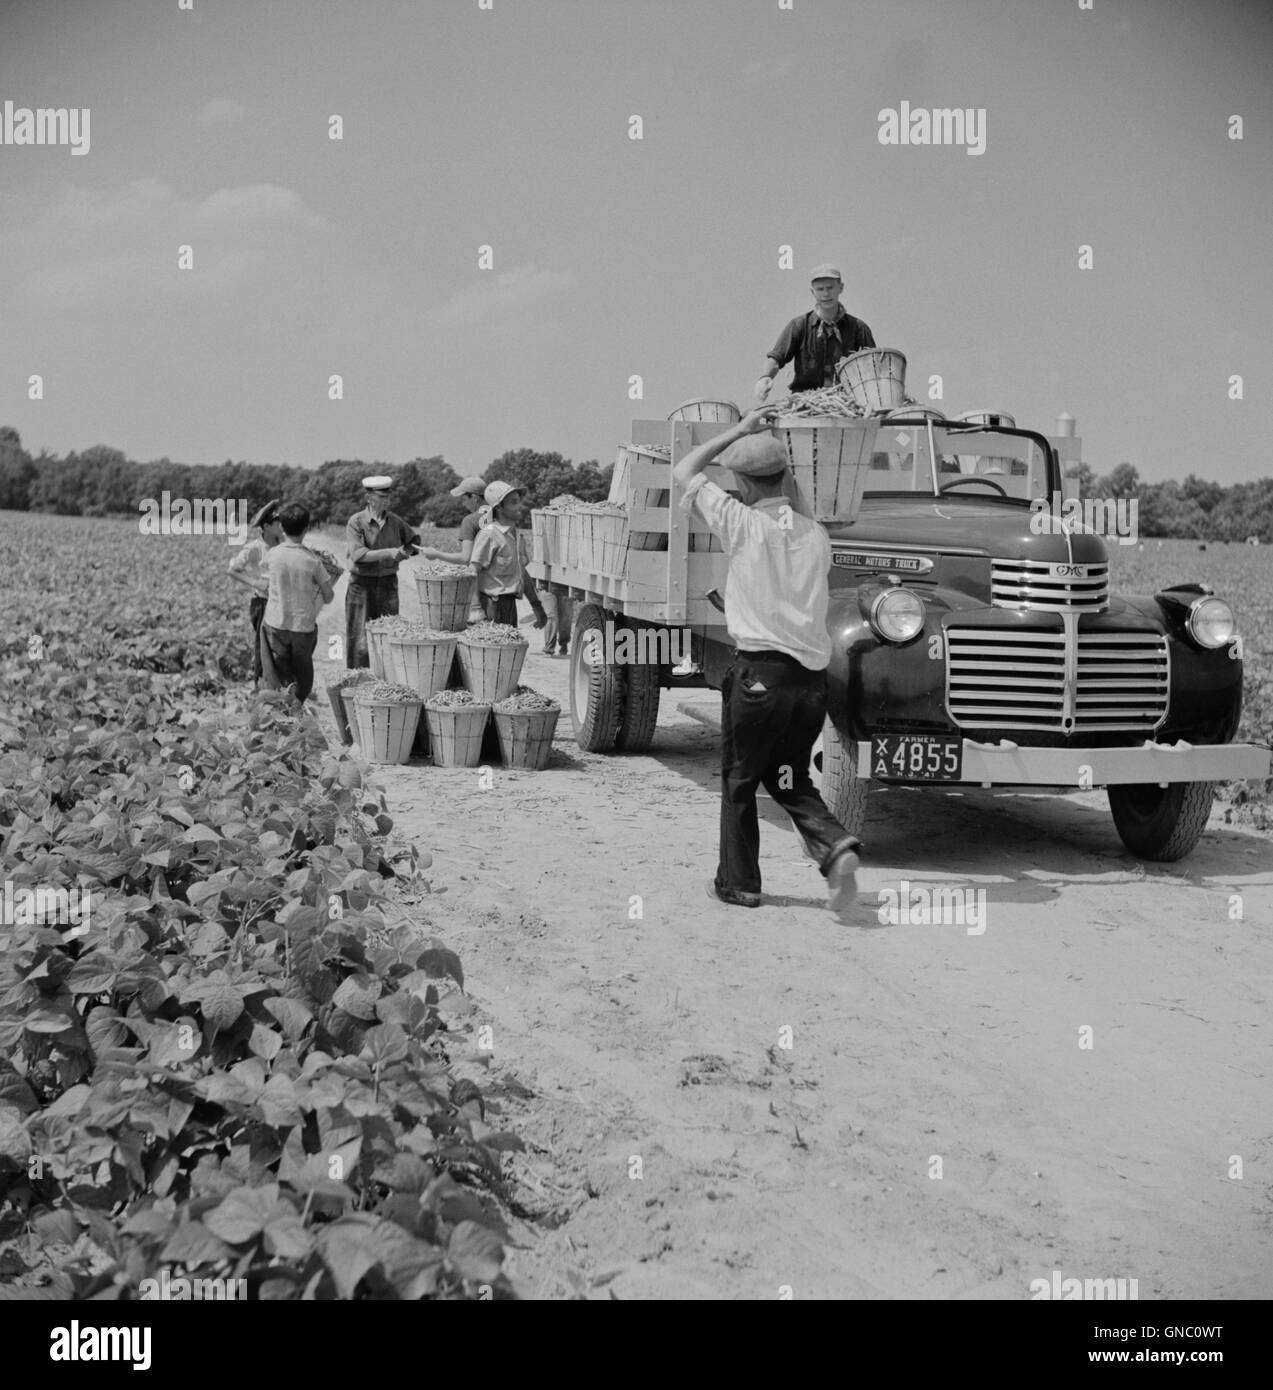 LKW, der mit Bushels voller Bohnen beladen wird, die von Tagesarbeitern aus Nachbarstädten, Seabrook Farms, Bridgeton, New Jersey, USA, gepflückt wurden. Marion Post Wolcott, USA Farm Security Administration, Juli 1941 Stockfoto